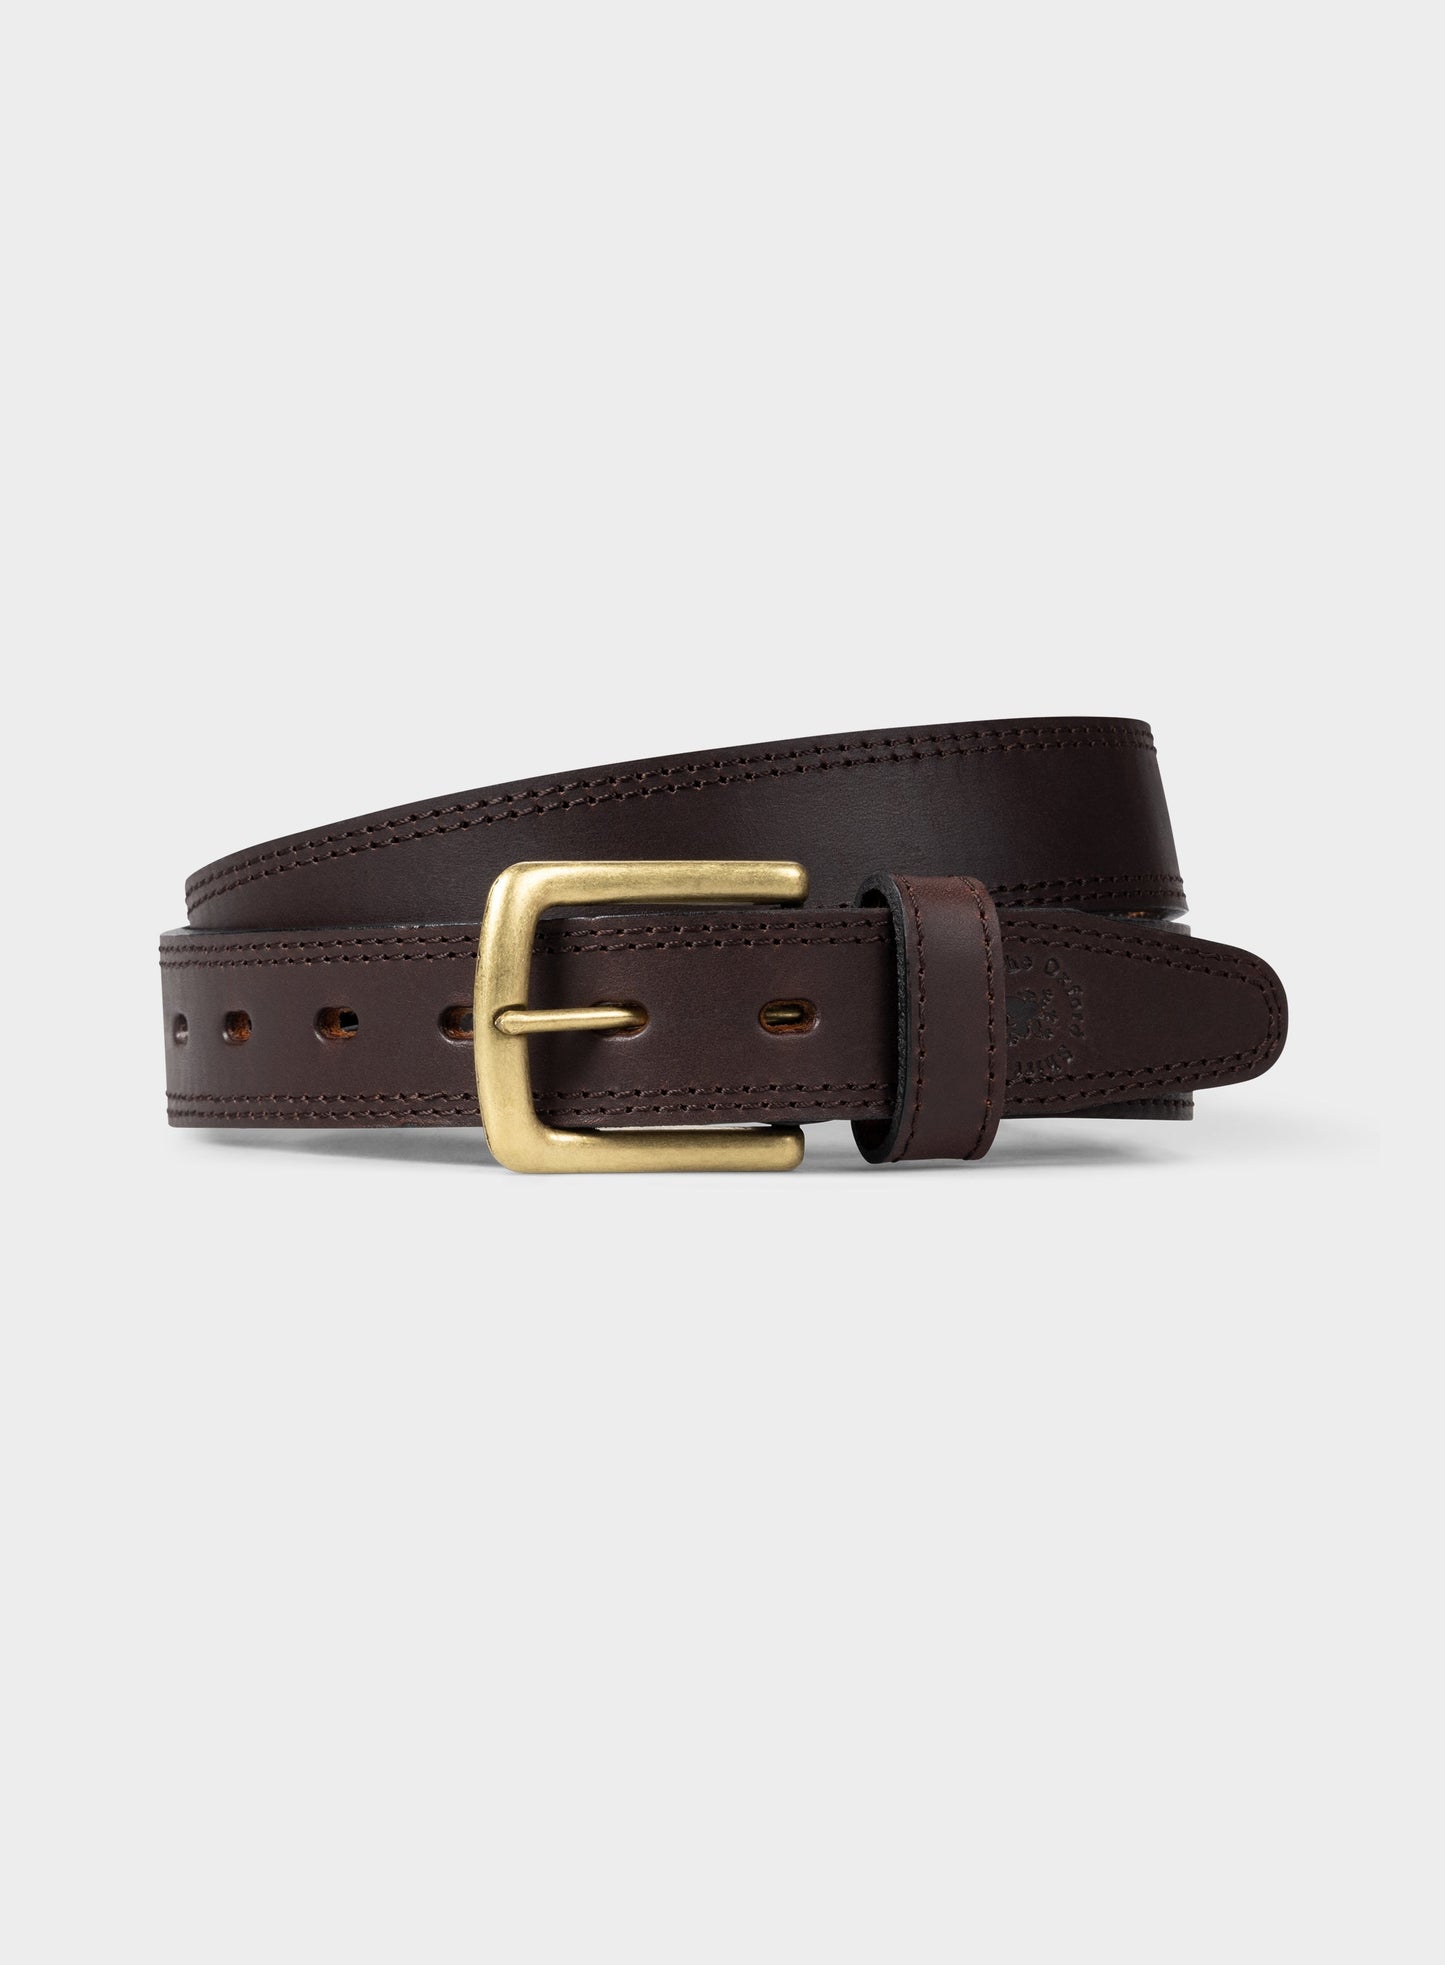 Polo Belt - Dark Brown